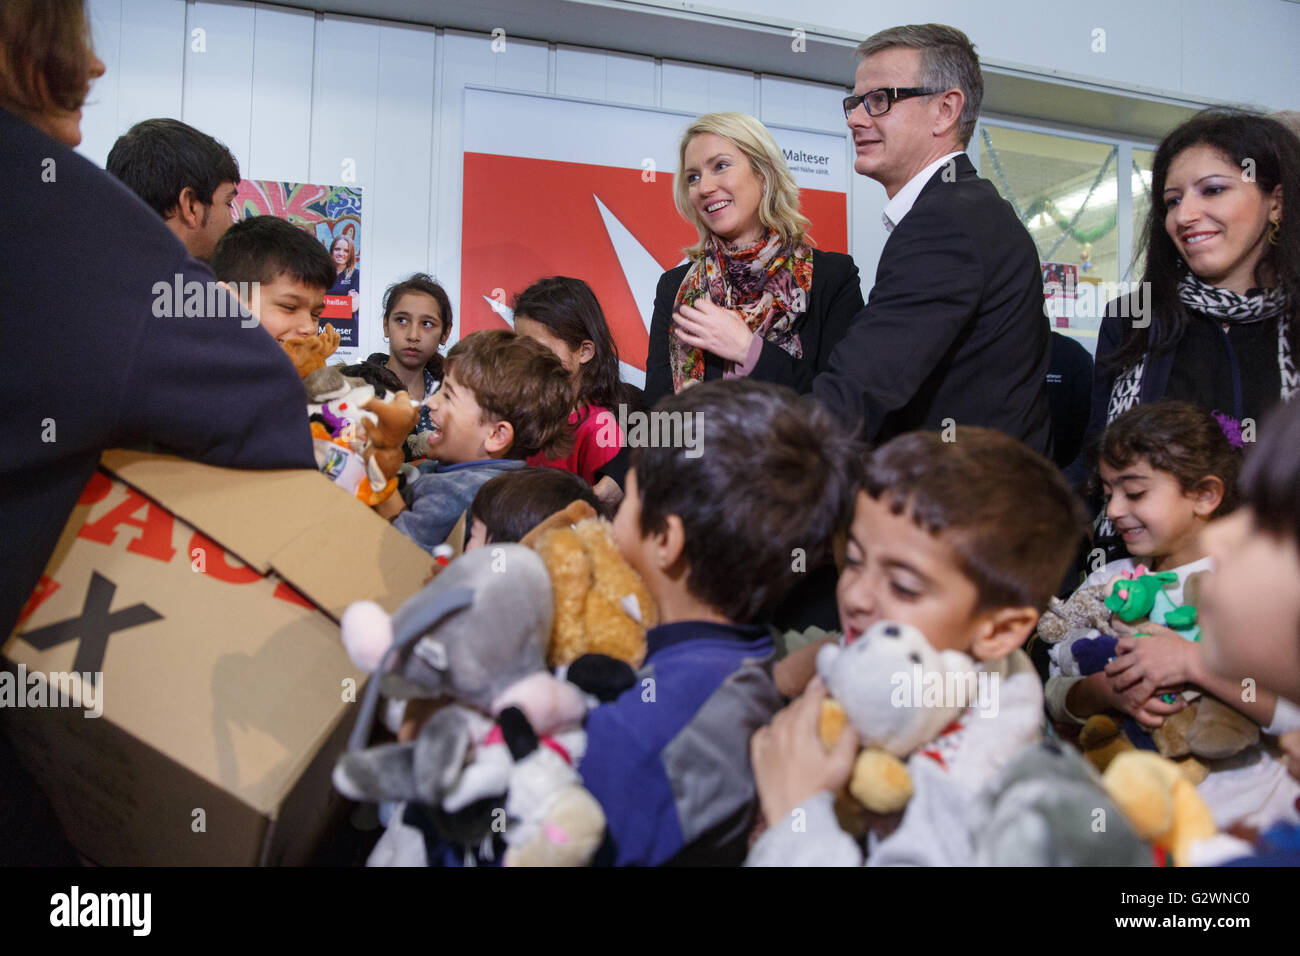 08.12.2015, Berlin, Berlin, Germania - Ministro della famiglia Manuela Schwesig (SPD) visitata presso il centro congressi di un ricovero per i rifugiati. In gestito da Malteser proprietà, circa 1.000 rifugiati registrati sono alloggiati, la maggior parte delle loro famiglie. Qui nella distribuzione di giocattoli morbidi per i 130 bambini presso l'albergo. 0DB151208D021CAROEX.JPG - non per la vendita in G E R M A N Y, A U S T R I A, S W I T Z e R L A N D [modello di rilascio: NO, la proprietà di rilascio: NO, (c) caro agenzia fotografica / Bleicker, http://www.caro-images.com, info@carofoto.pl - Qualsiasi uso di questa immagine è soggetto a royalty!] Foto Stock